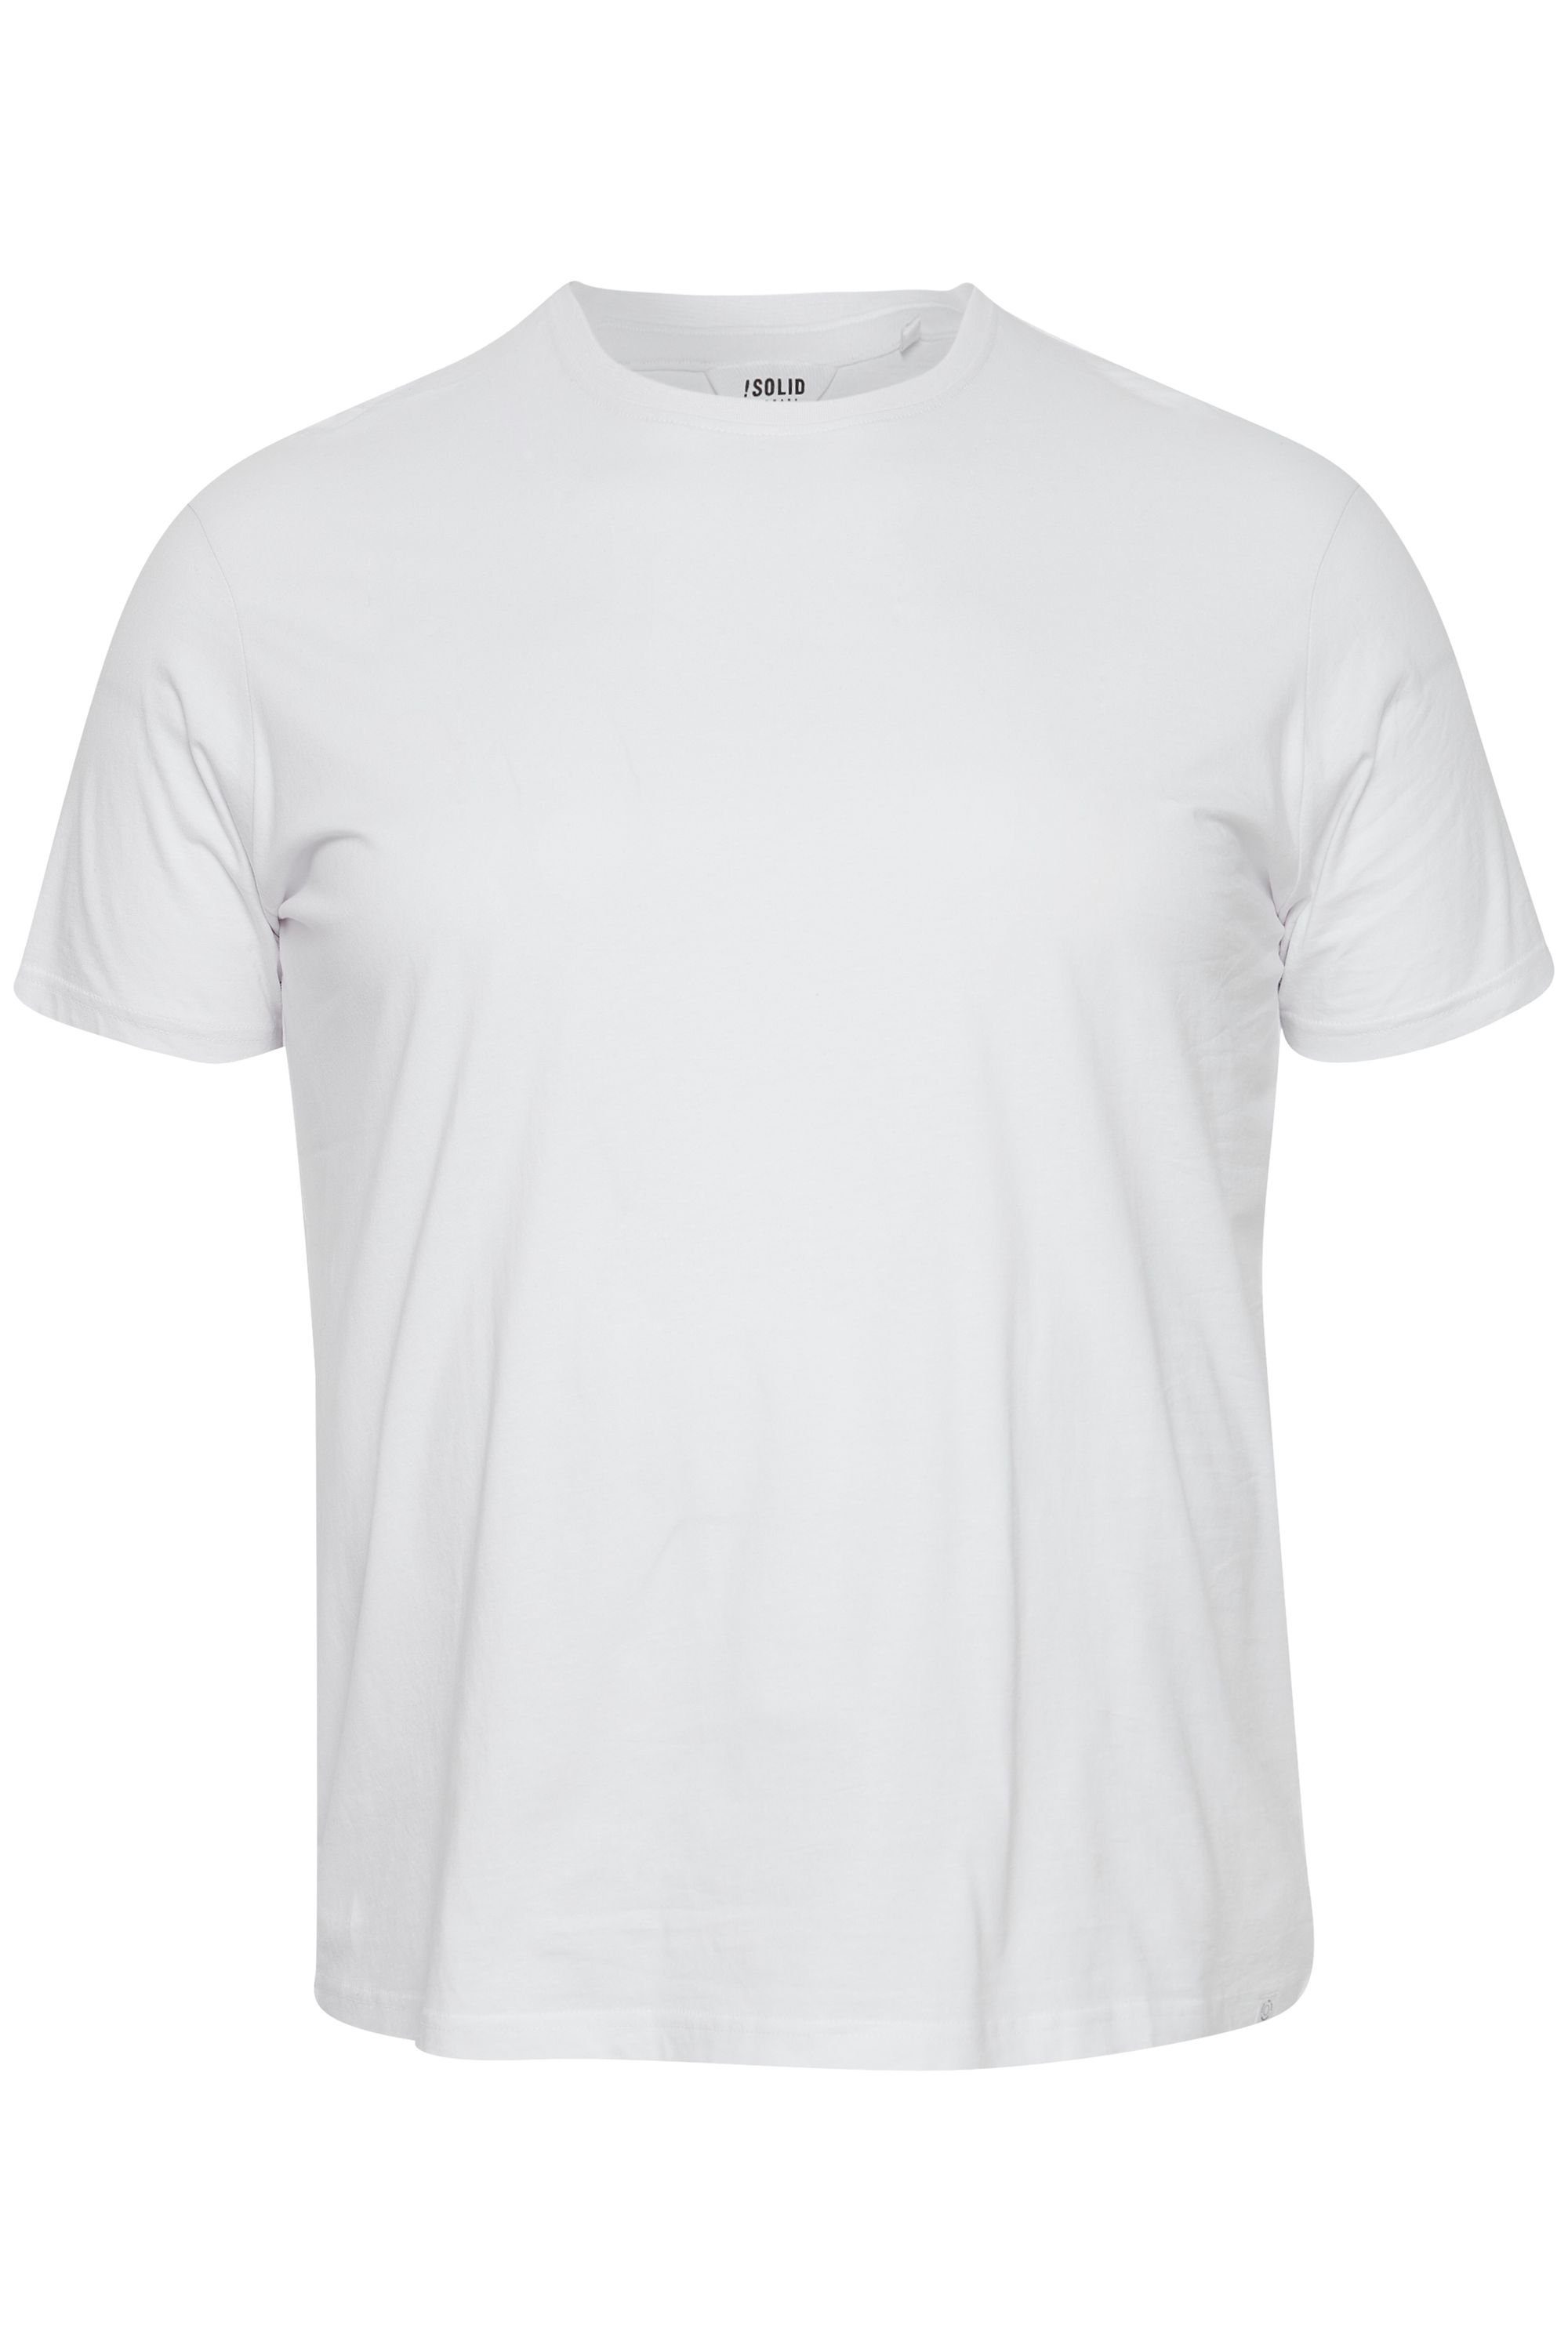 BT White T-Shirt SDBedonno (110601) !Solid